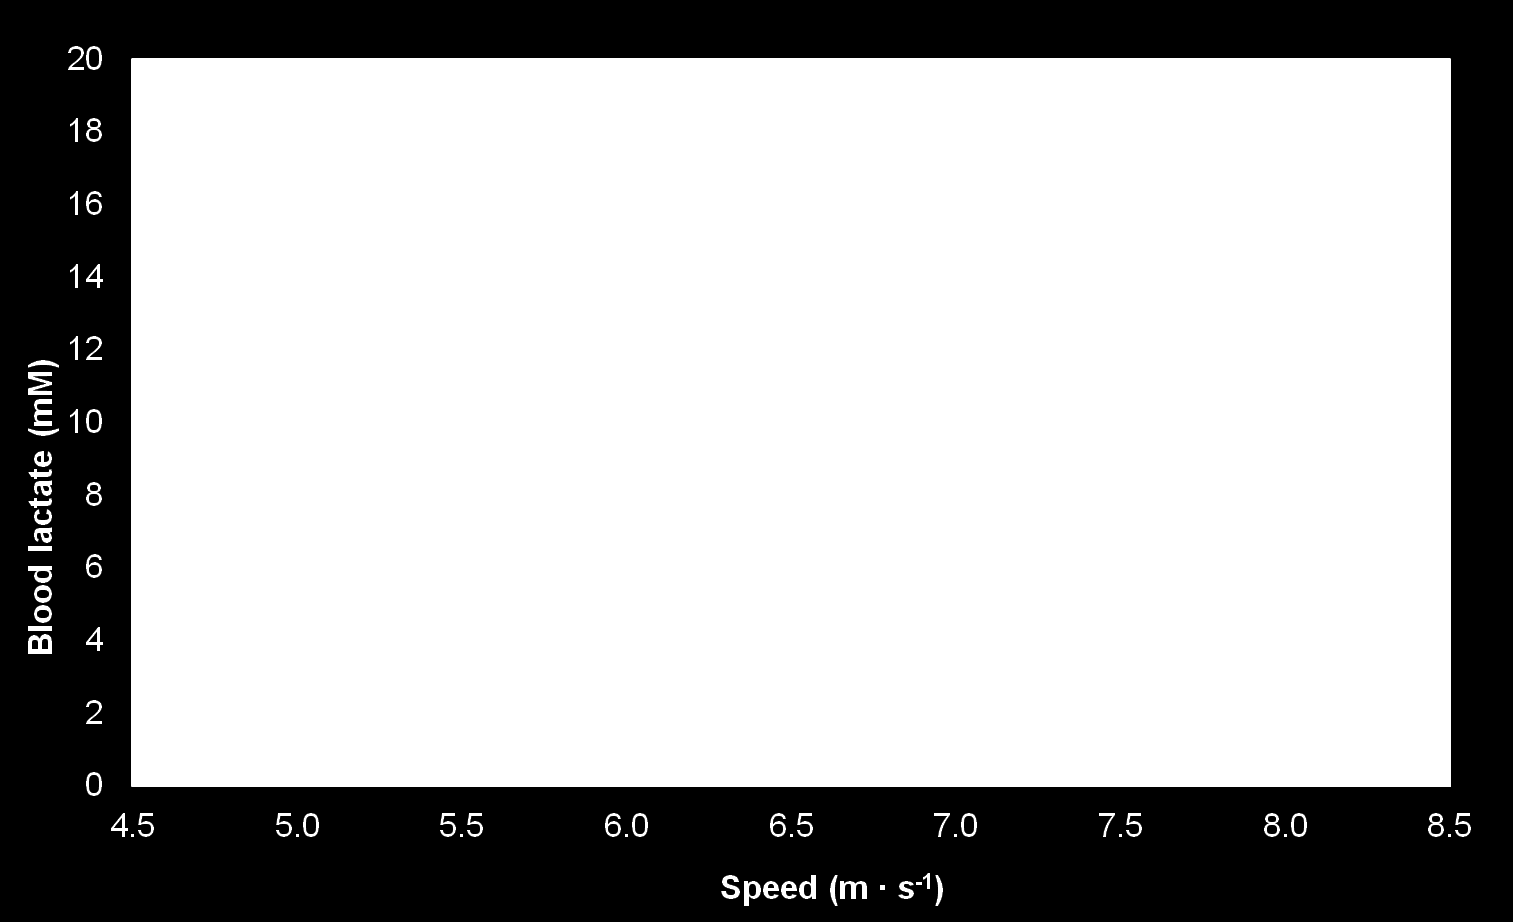 Juoksumatto- ja ratatestin vertailu Juoksumattotesti: n x 20 s / 100 s (kulma 3 astetta) Ratatesti: 10 x 150 m / 100 s (200 m rata) Juoksu- ja ratatestien tulokset